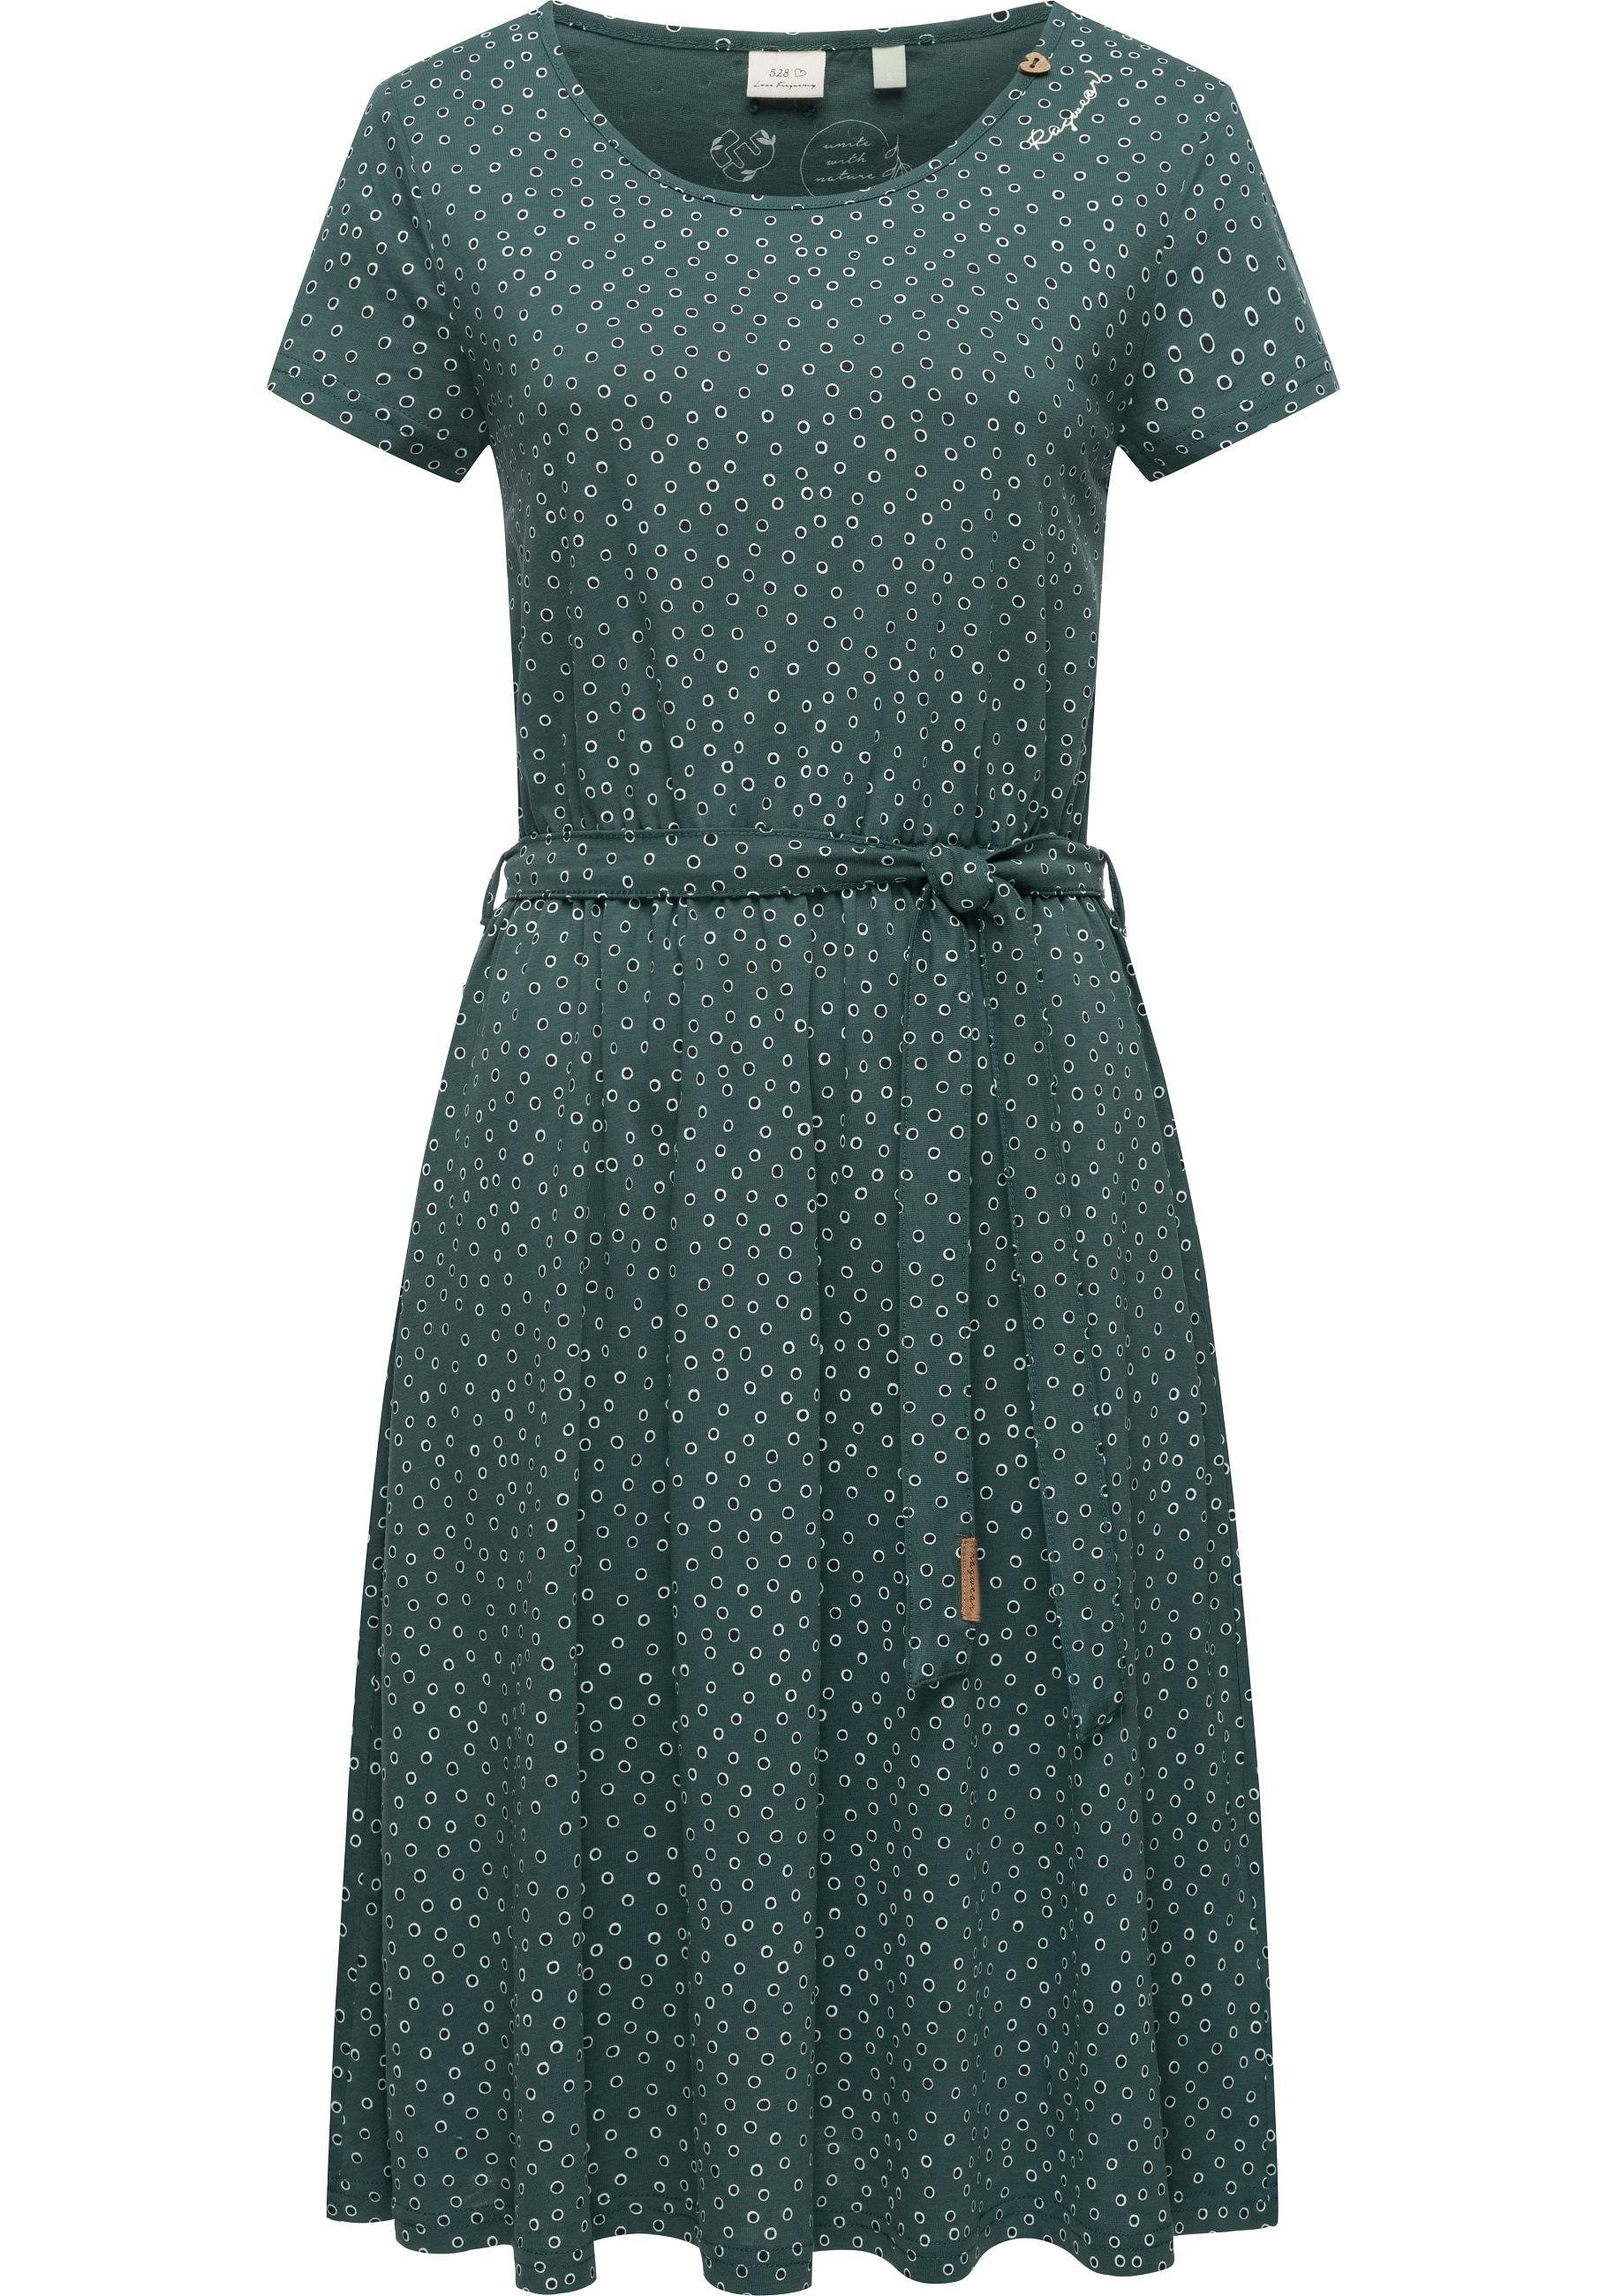 Ragwear Shirtkleid Olina Dress Organic stylisches Sommerkleid mit Print und Gürtel dunkelgrün